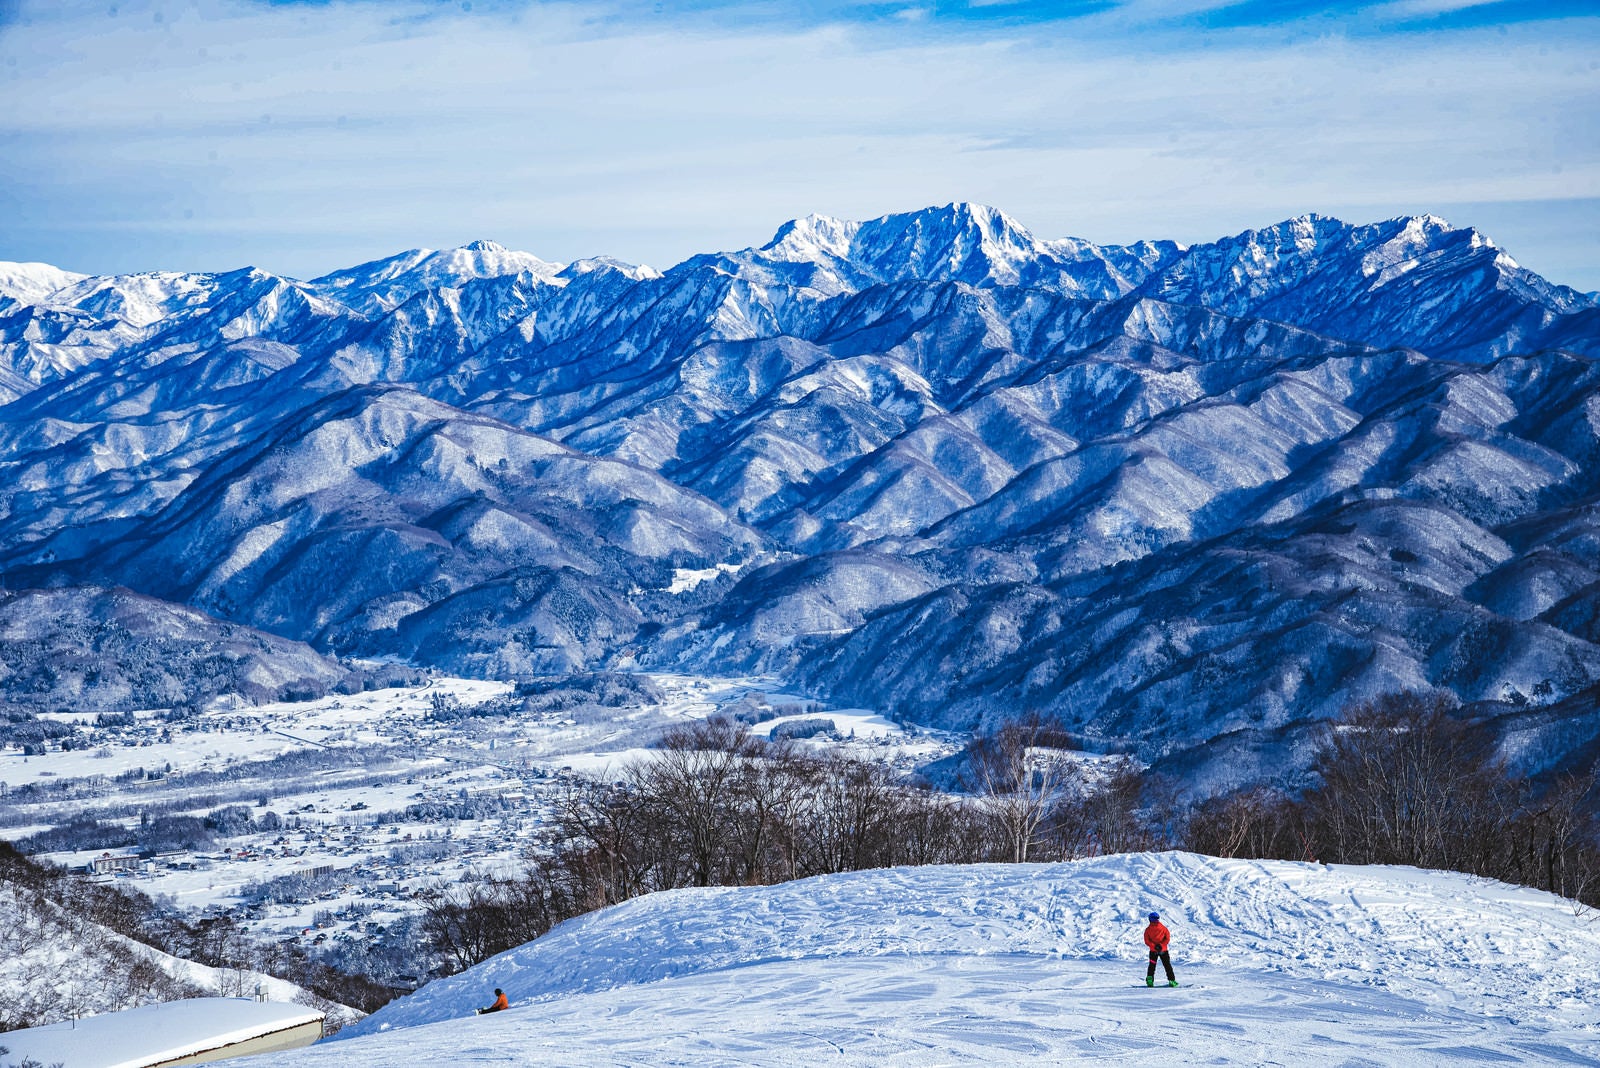 「白馬五竜スキー場から見える雪化粧した山々」の写真